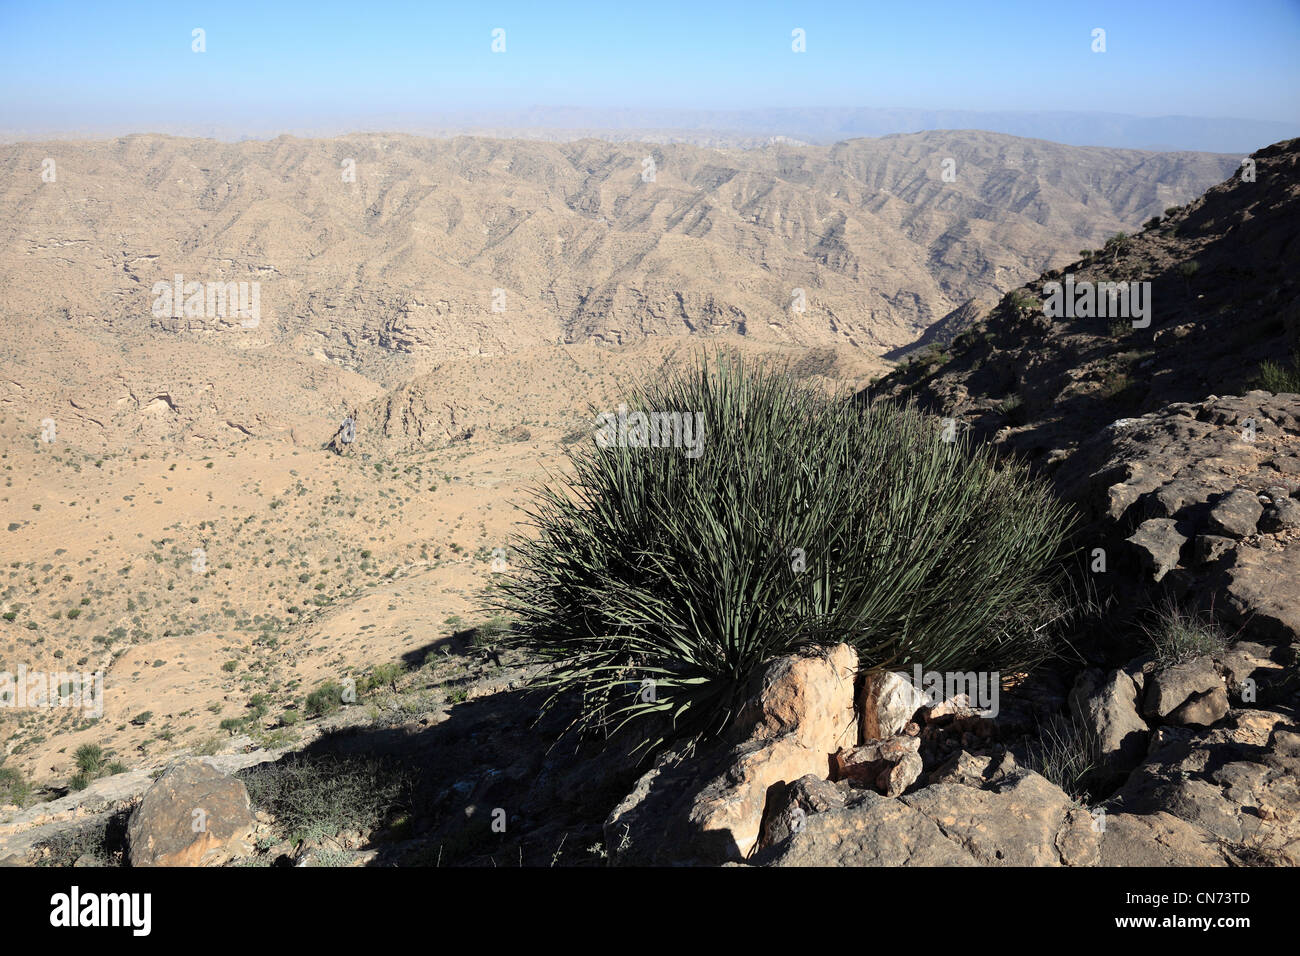 Landschaft des südlichen Dhofar, Jabal al-Qamar, Oman Stock Photo